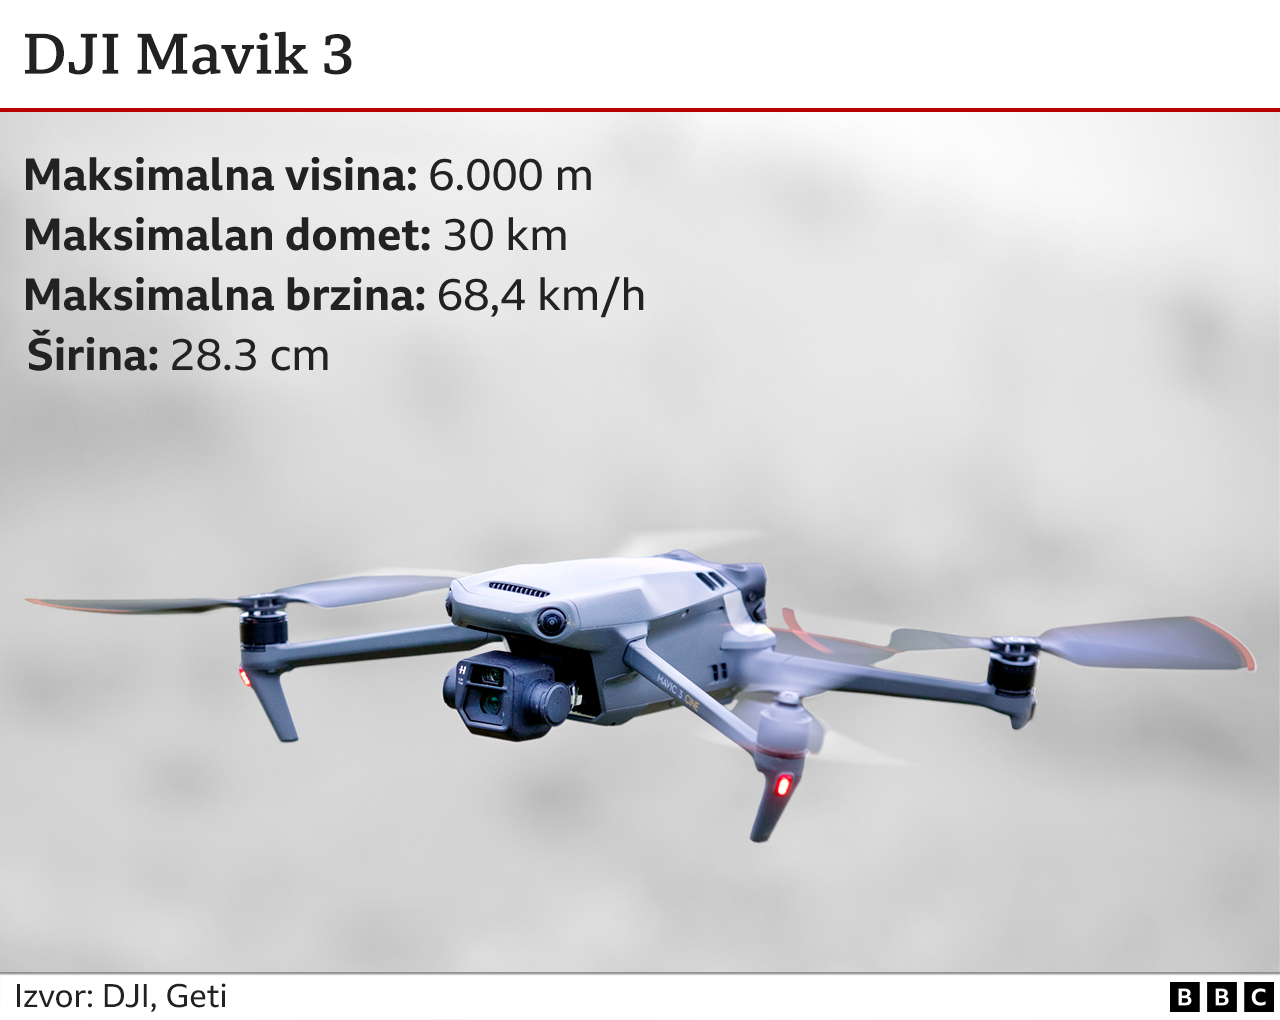 DJI Mevik 3 dron